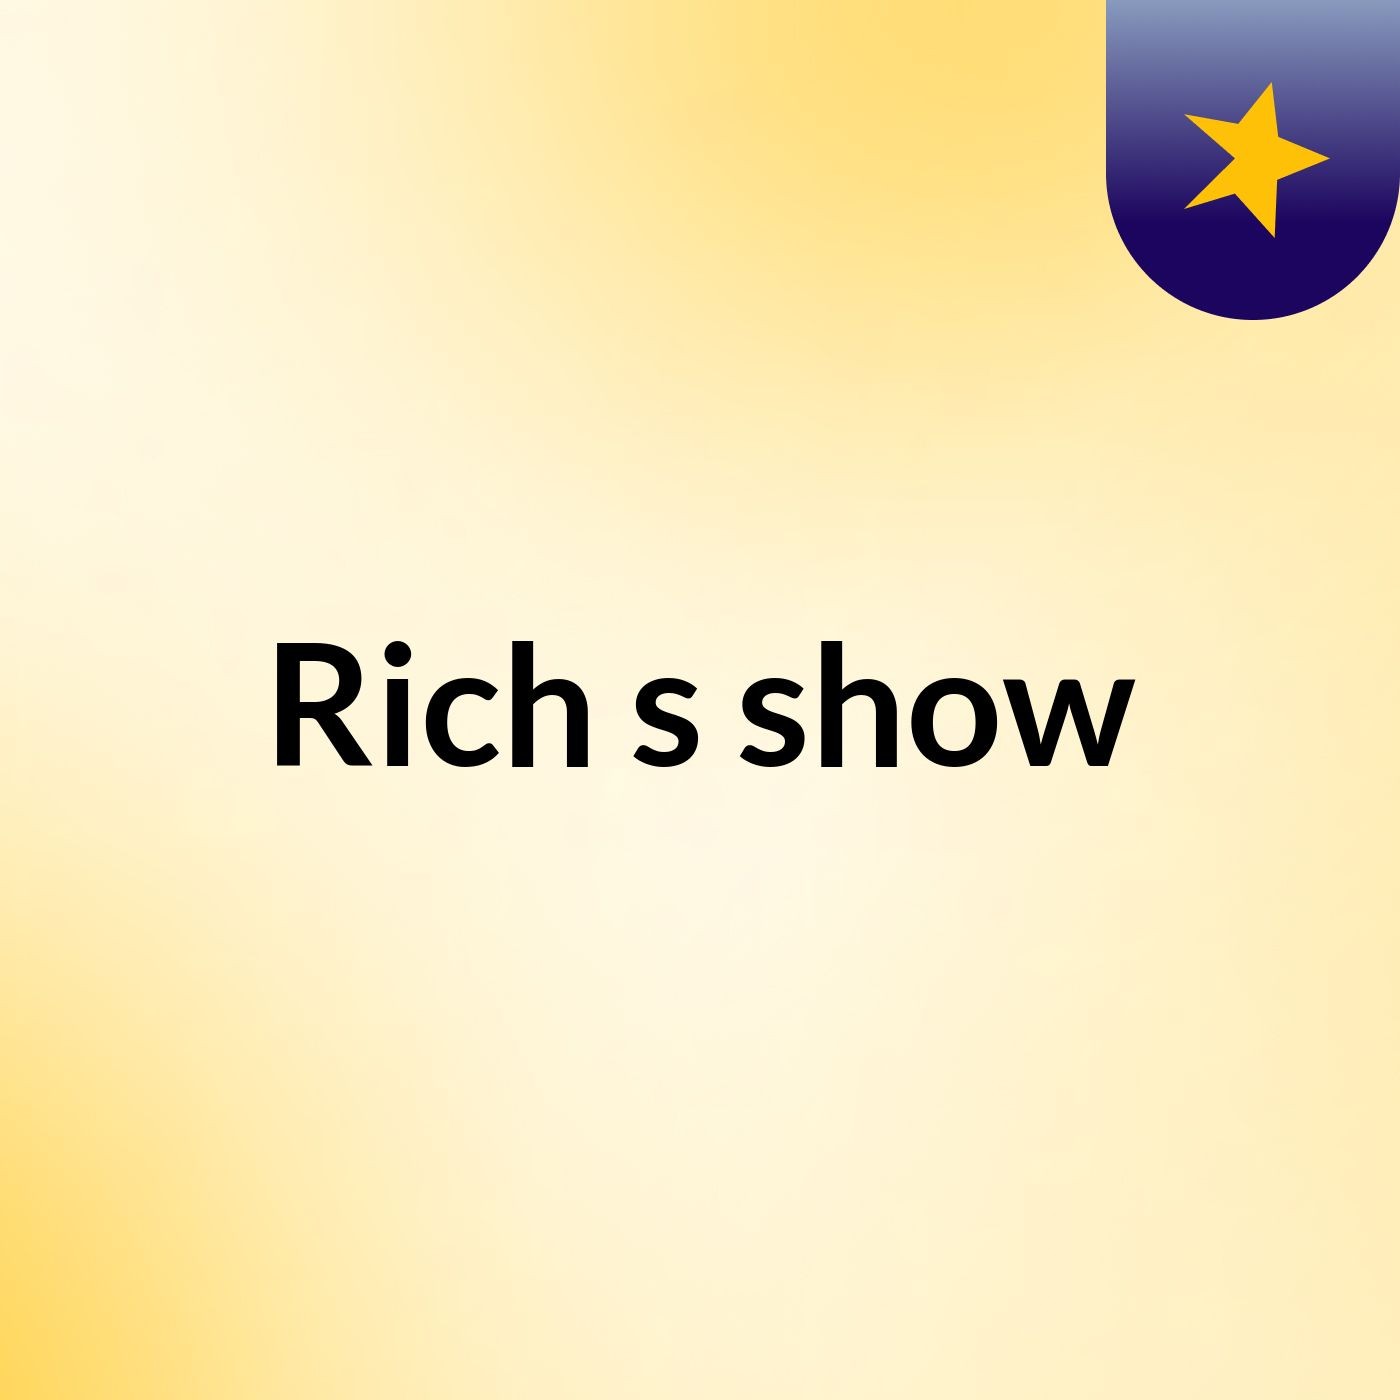 Episode 11 - Rich's show